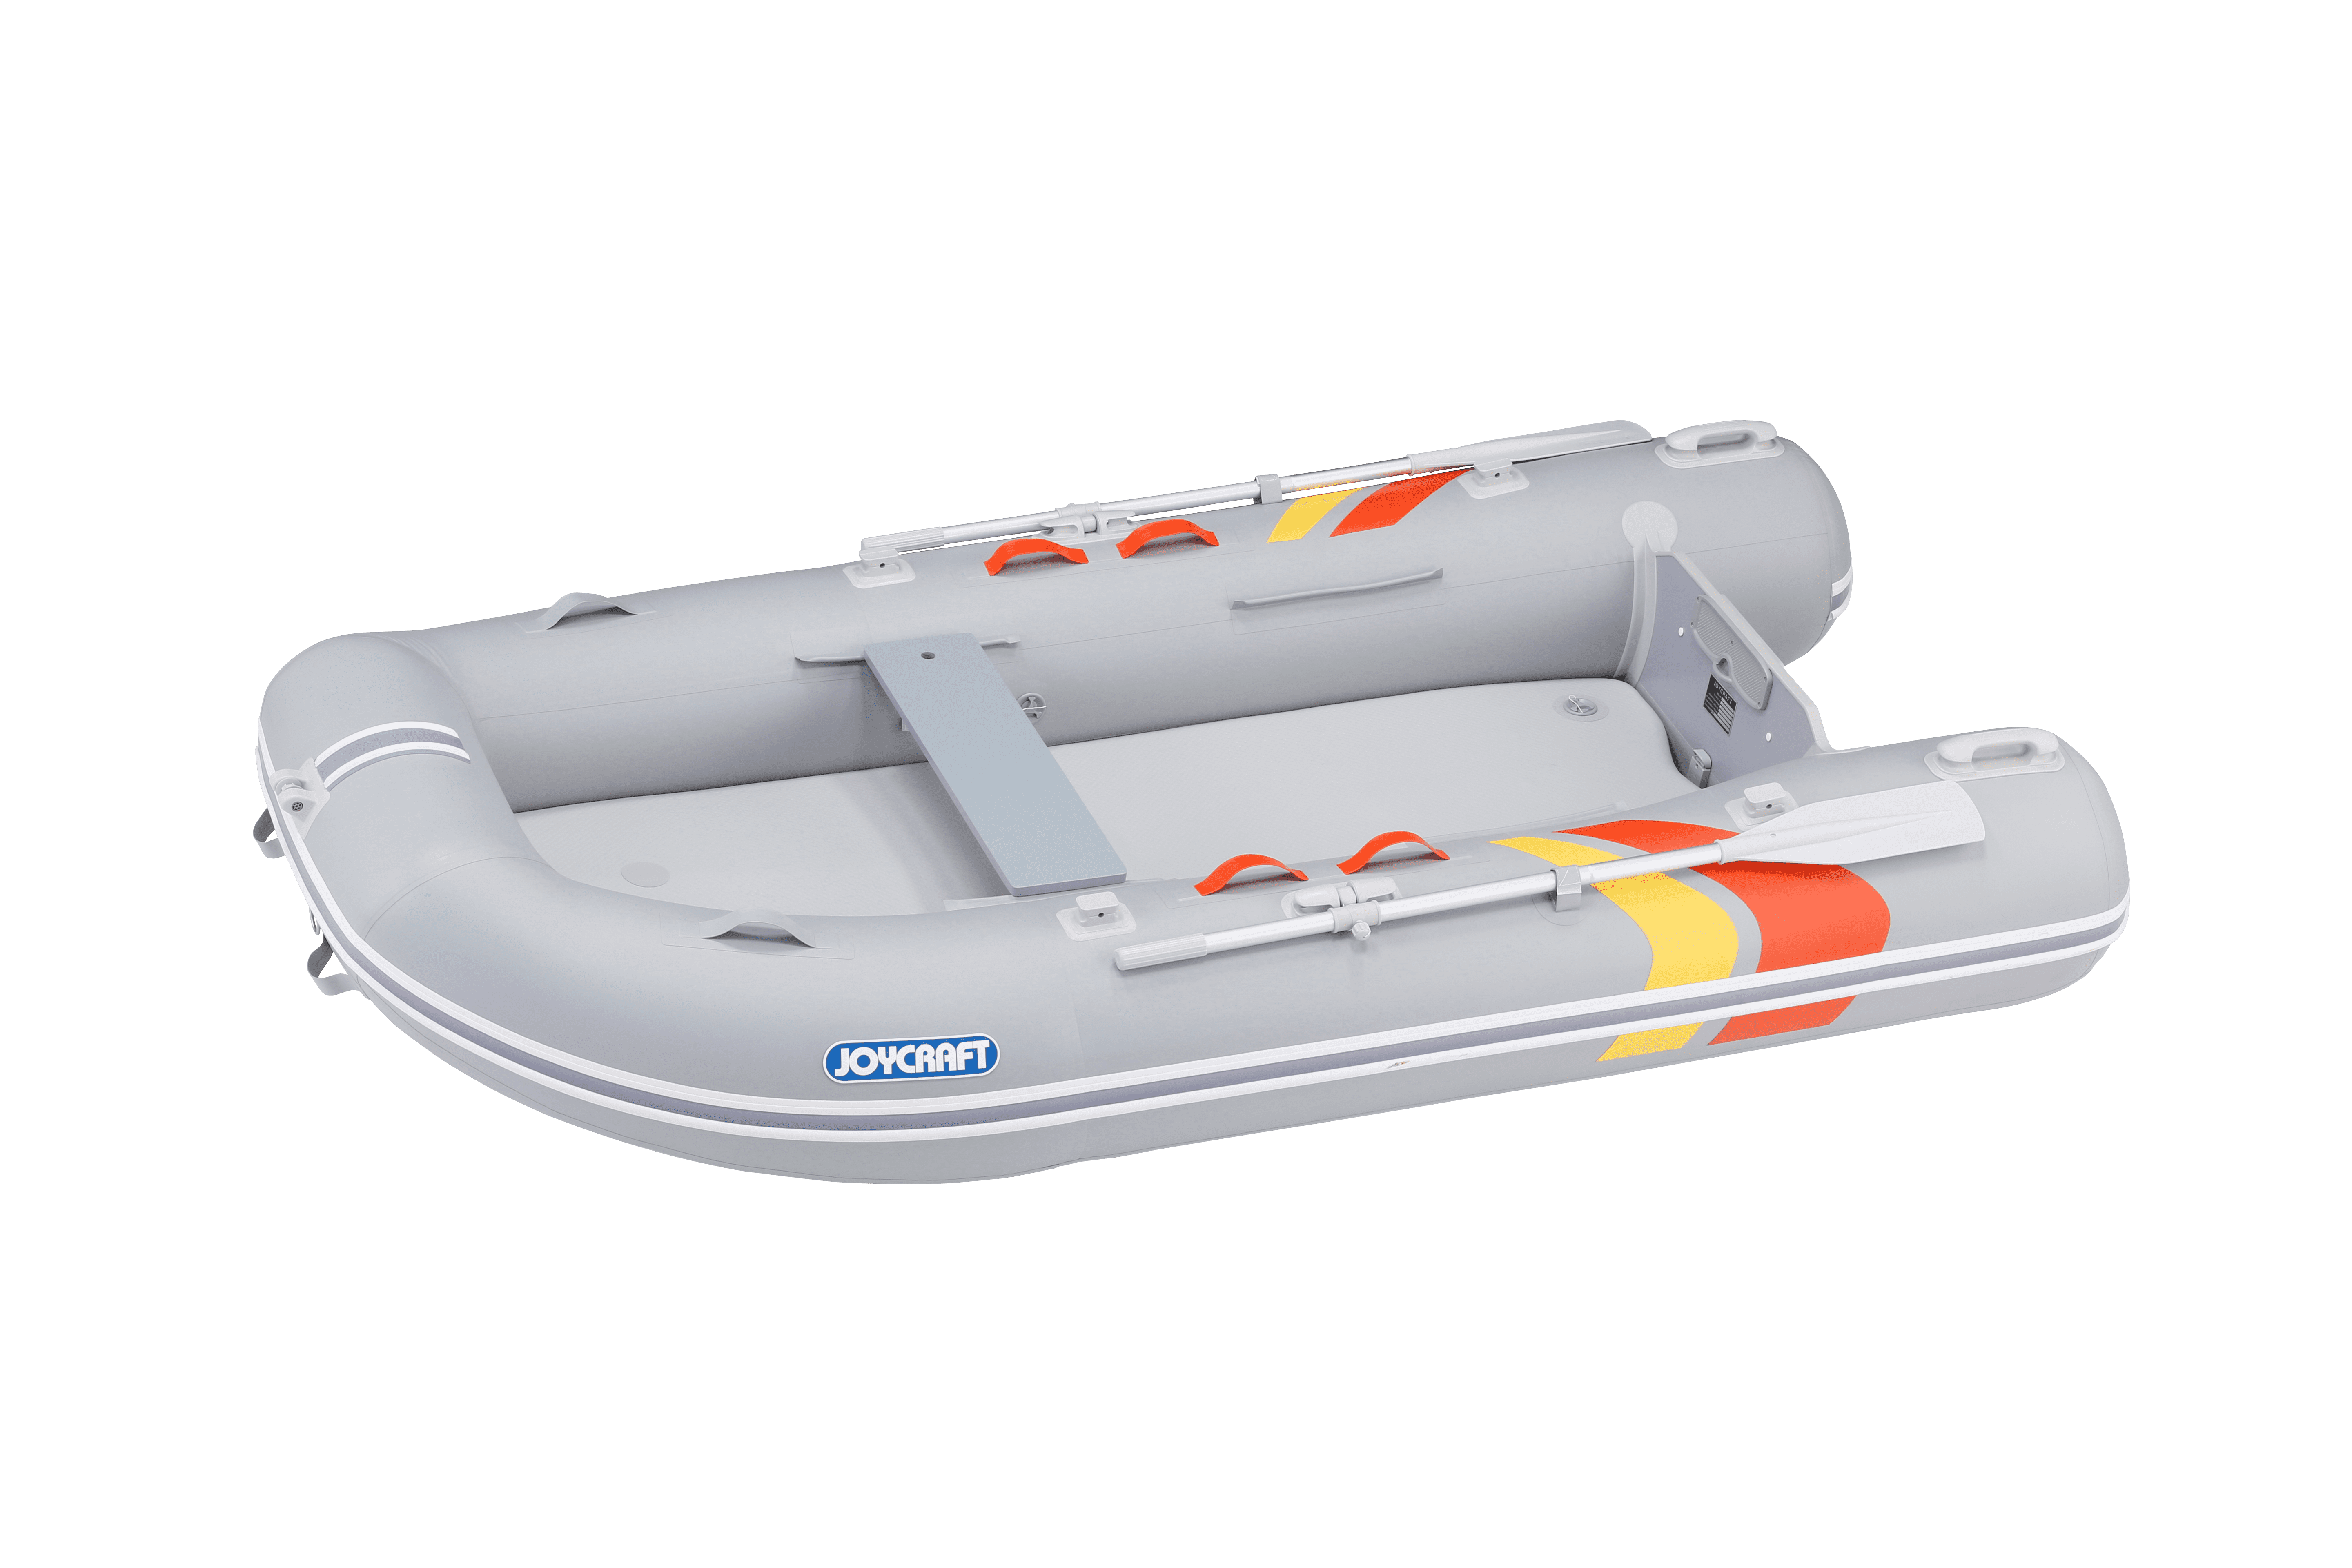 P-キャット310 SS | ジョイクラフト ゴムボートの販売とメンテナンス 